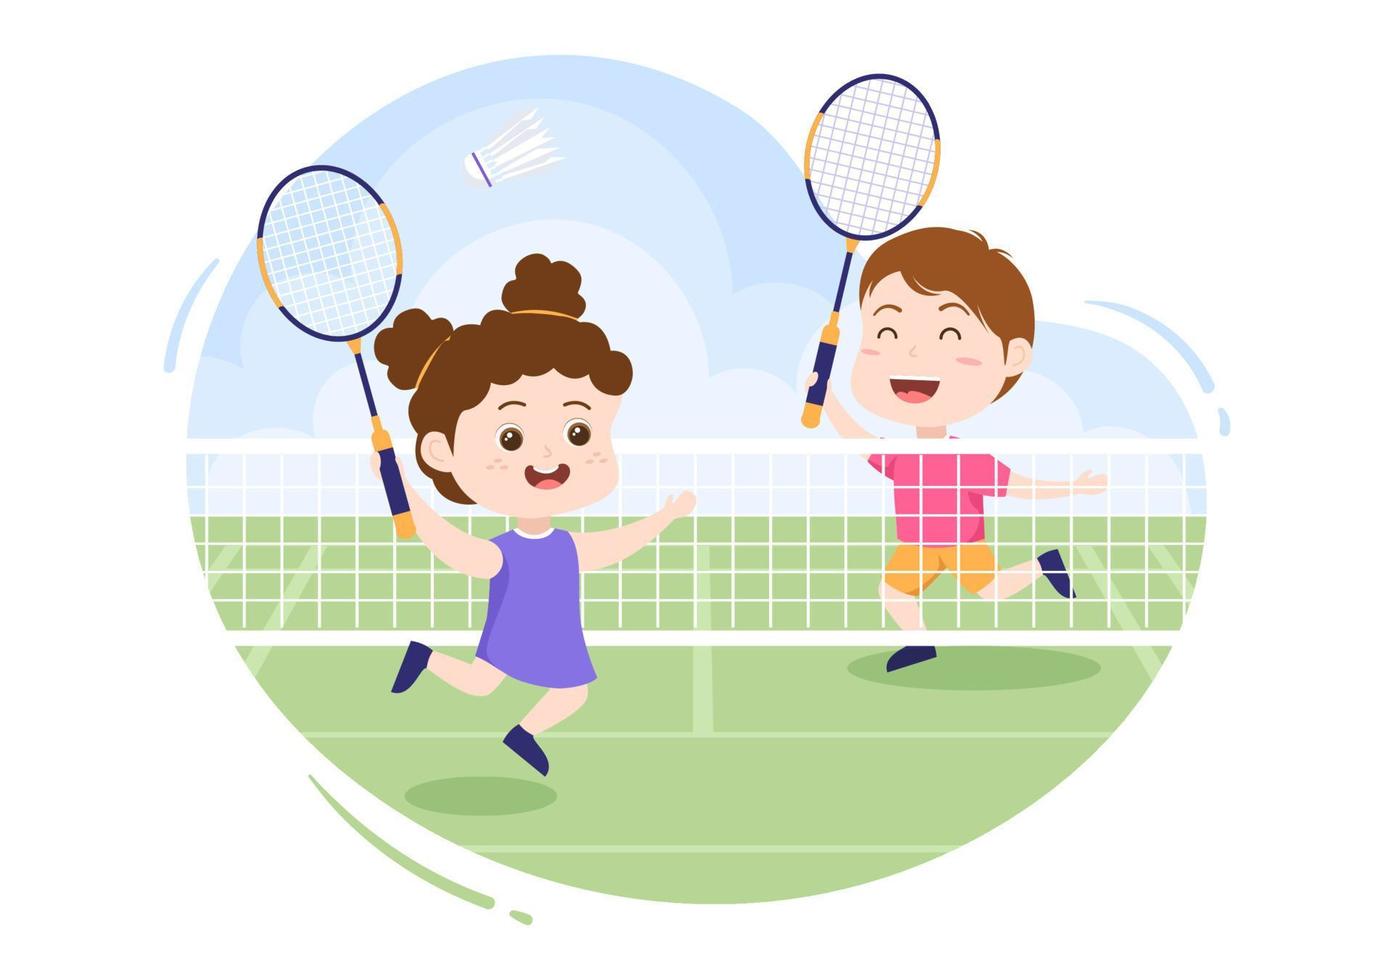 Badmintonspieler mit Shuttle auf dem Platz in flacher Cartoon-Illustration. fröhliches Sportspiel und Freizeitdesign vektor